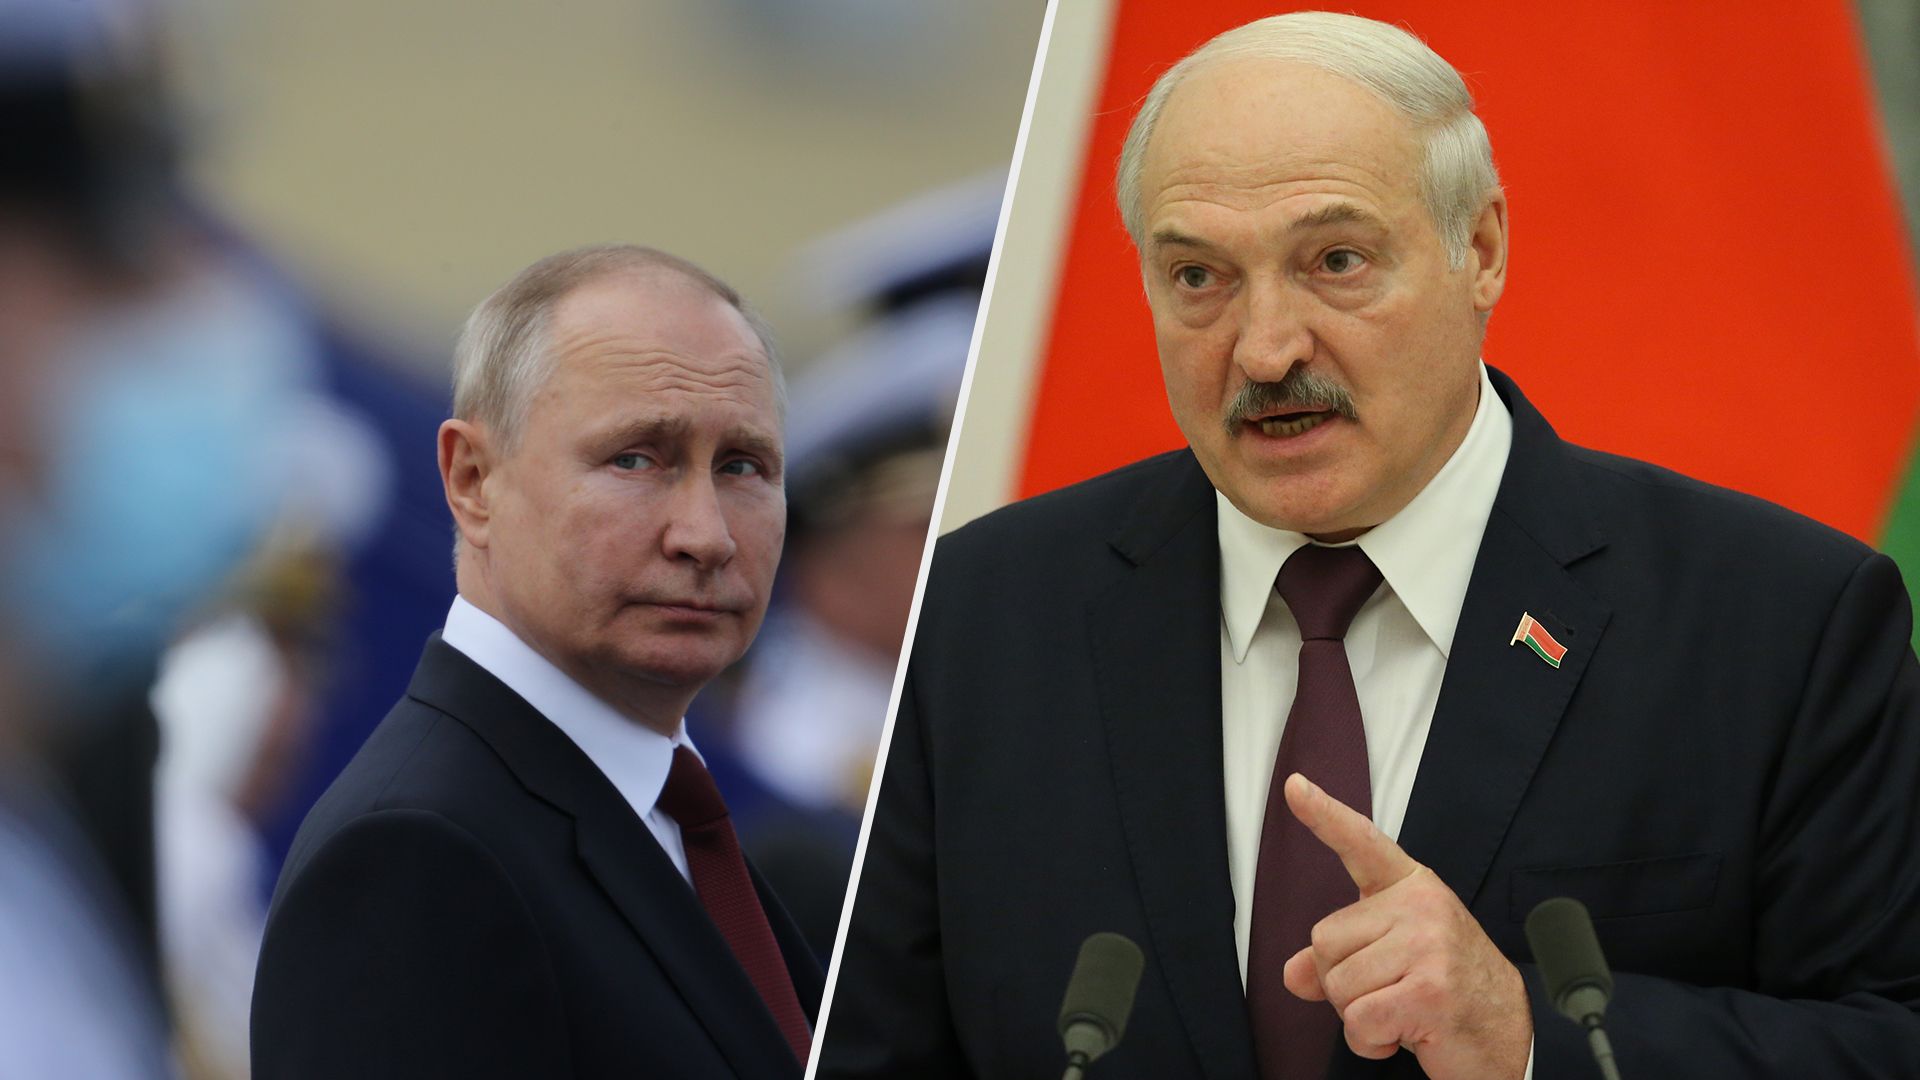 Нащо Путін приїхав до Лукашенка - що кажуть у Кремлі